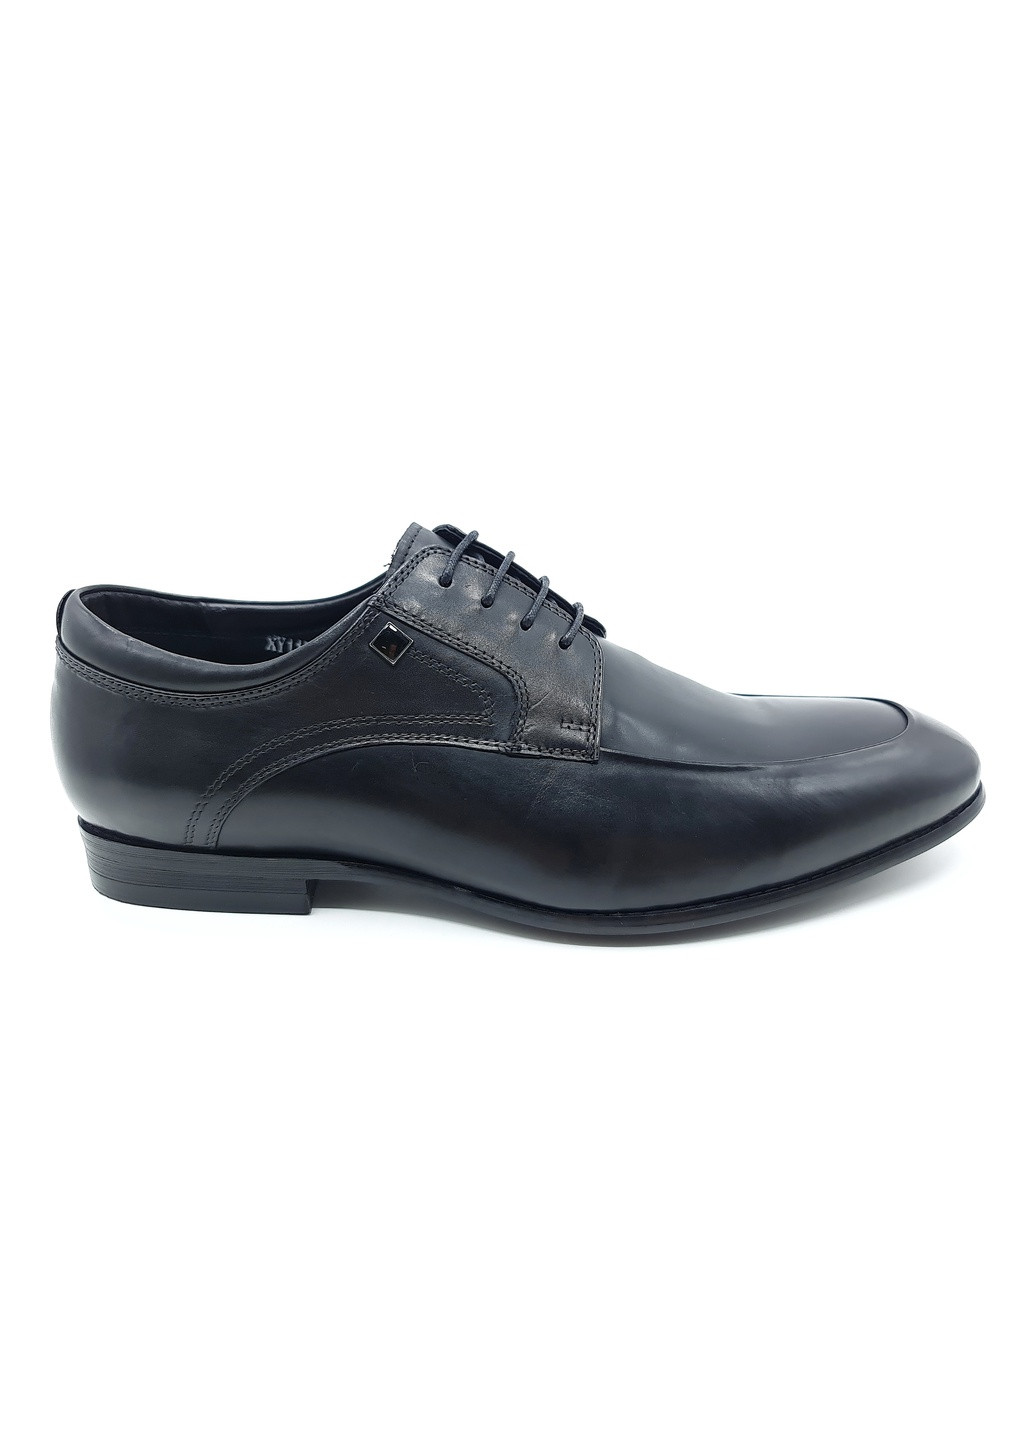 Черные чоловічі туфлі чорні шкіряні bv-19-5 28 см (р) Boss Victori